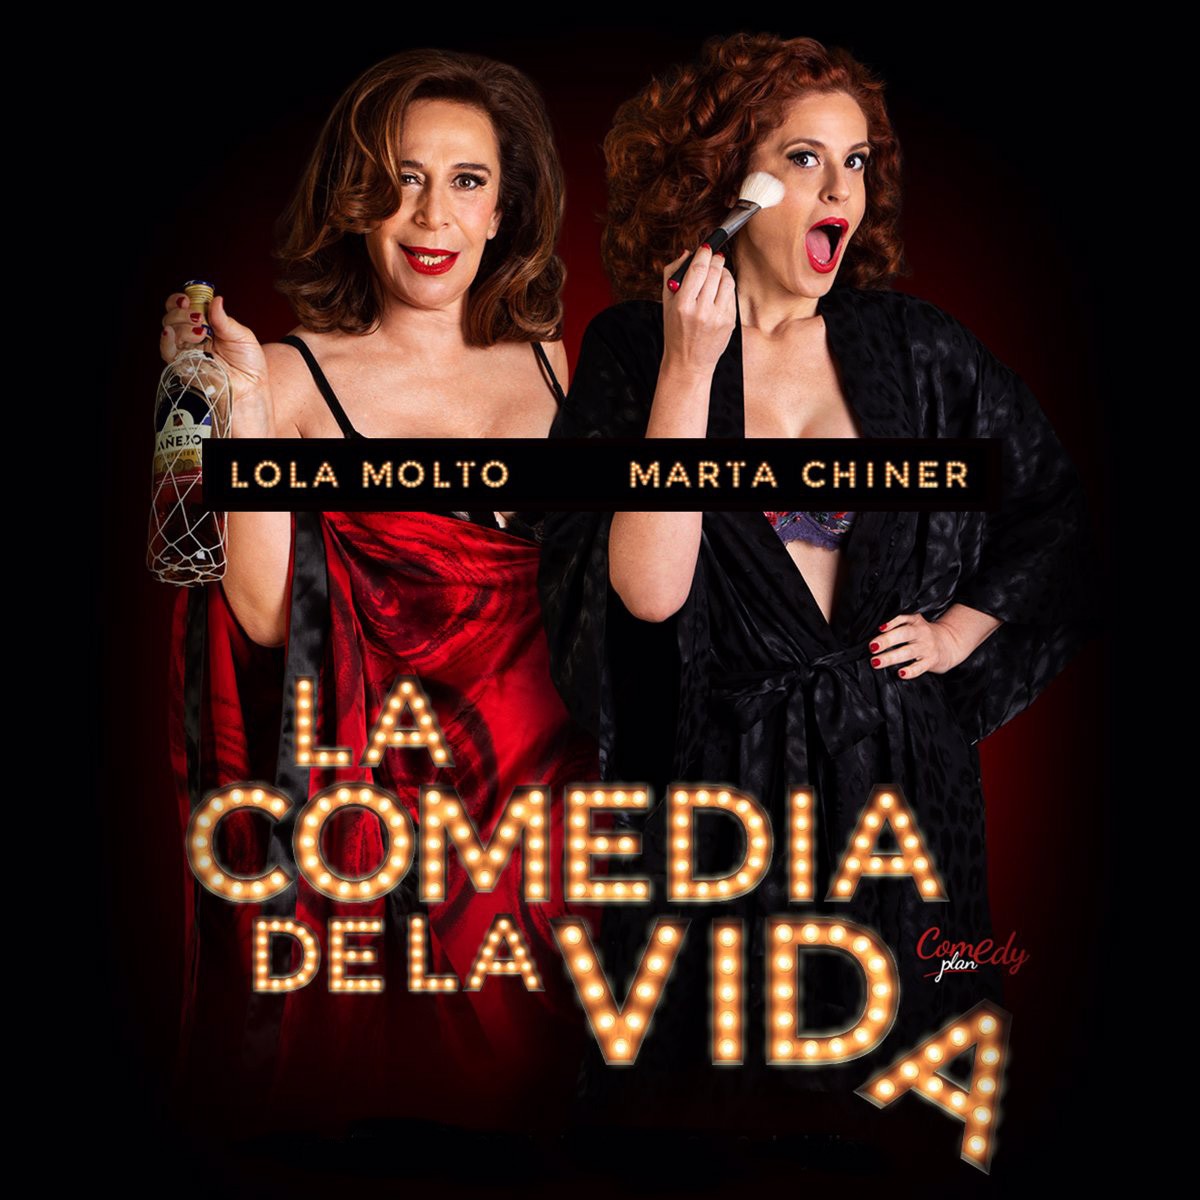 “La comèdia de la vida – Teatro Olympia